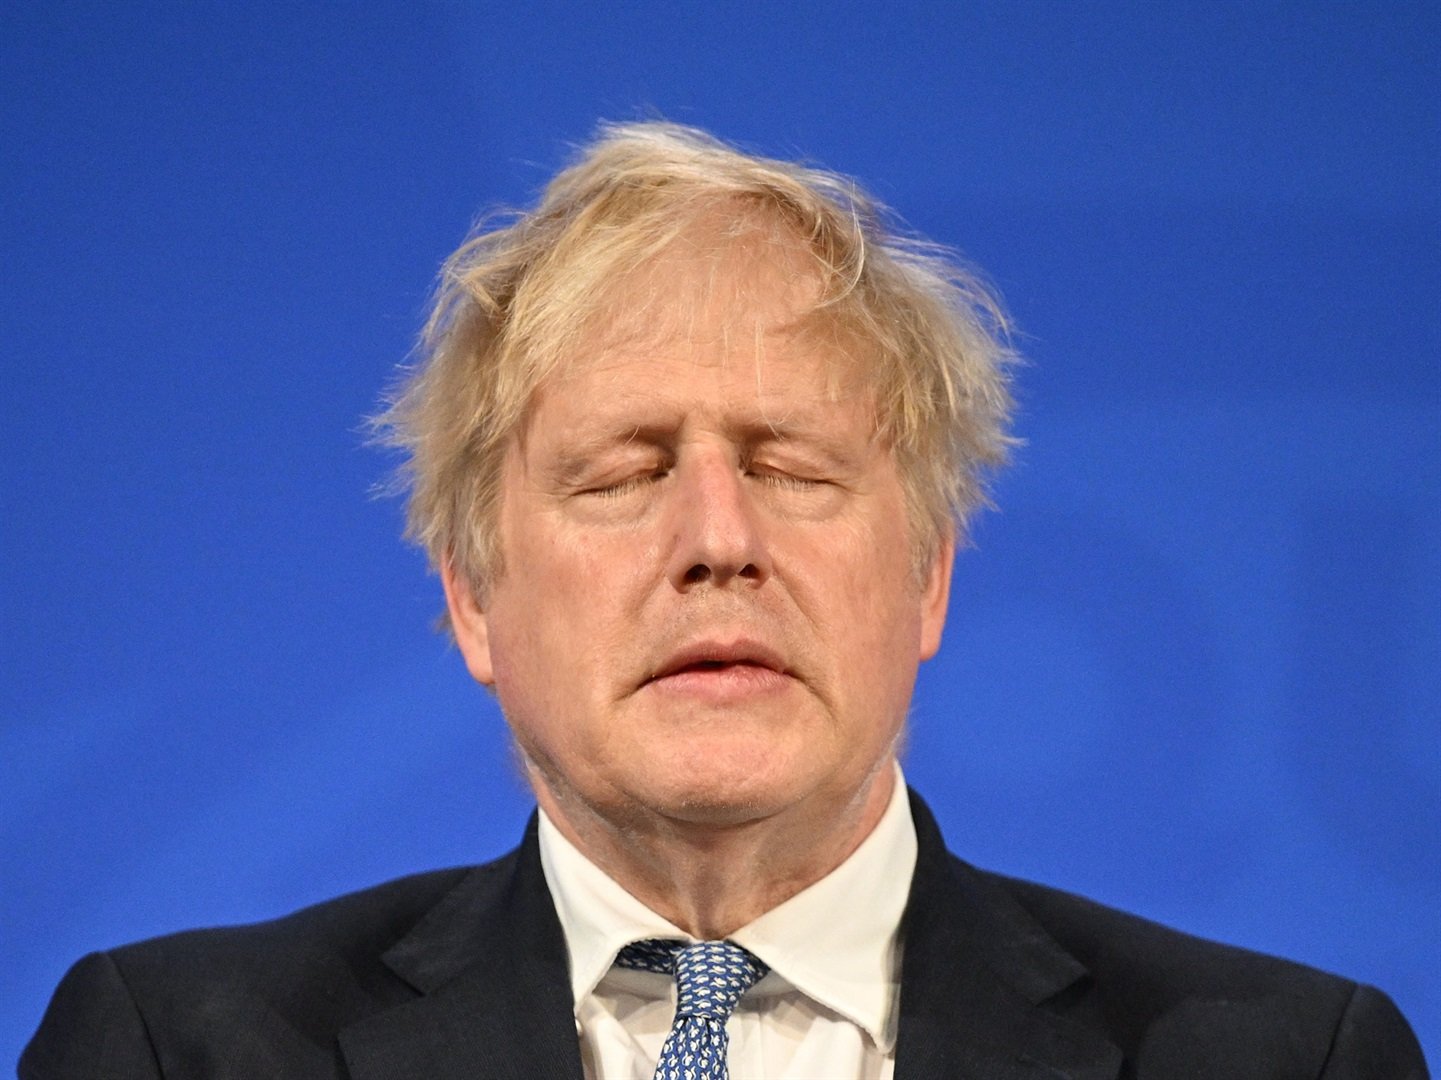 Pemerintah Inggris hanya akan mengizinkan seruan oposisi untuk mosi percaya jika referensi ke Boris Johnson dipotong